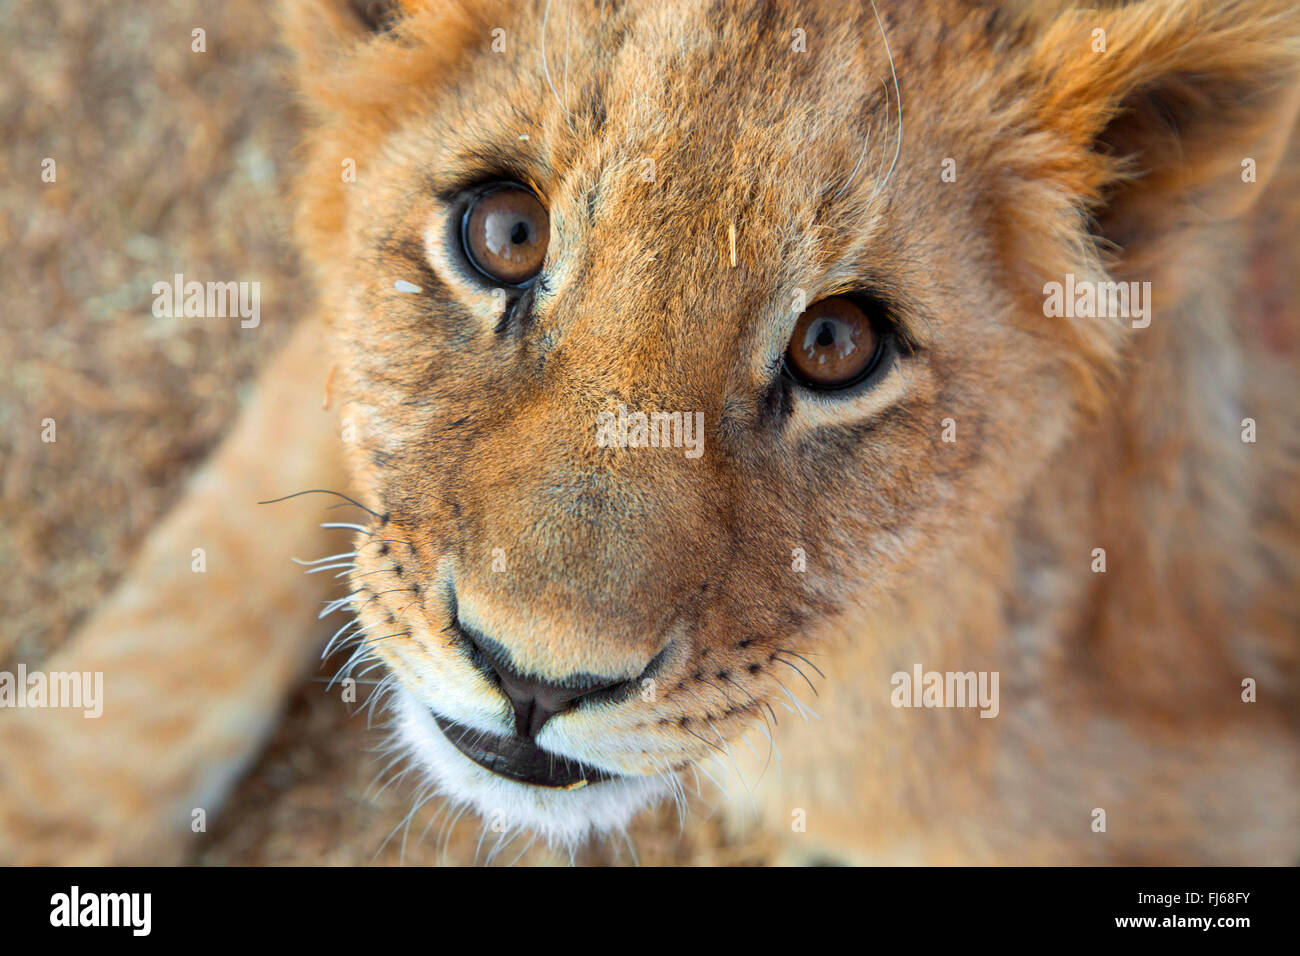 León (Panthera leo), cachorro de león, retrato, Sudáfrica Foto de stock